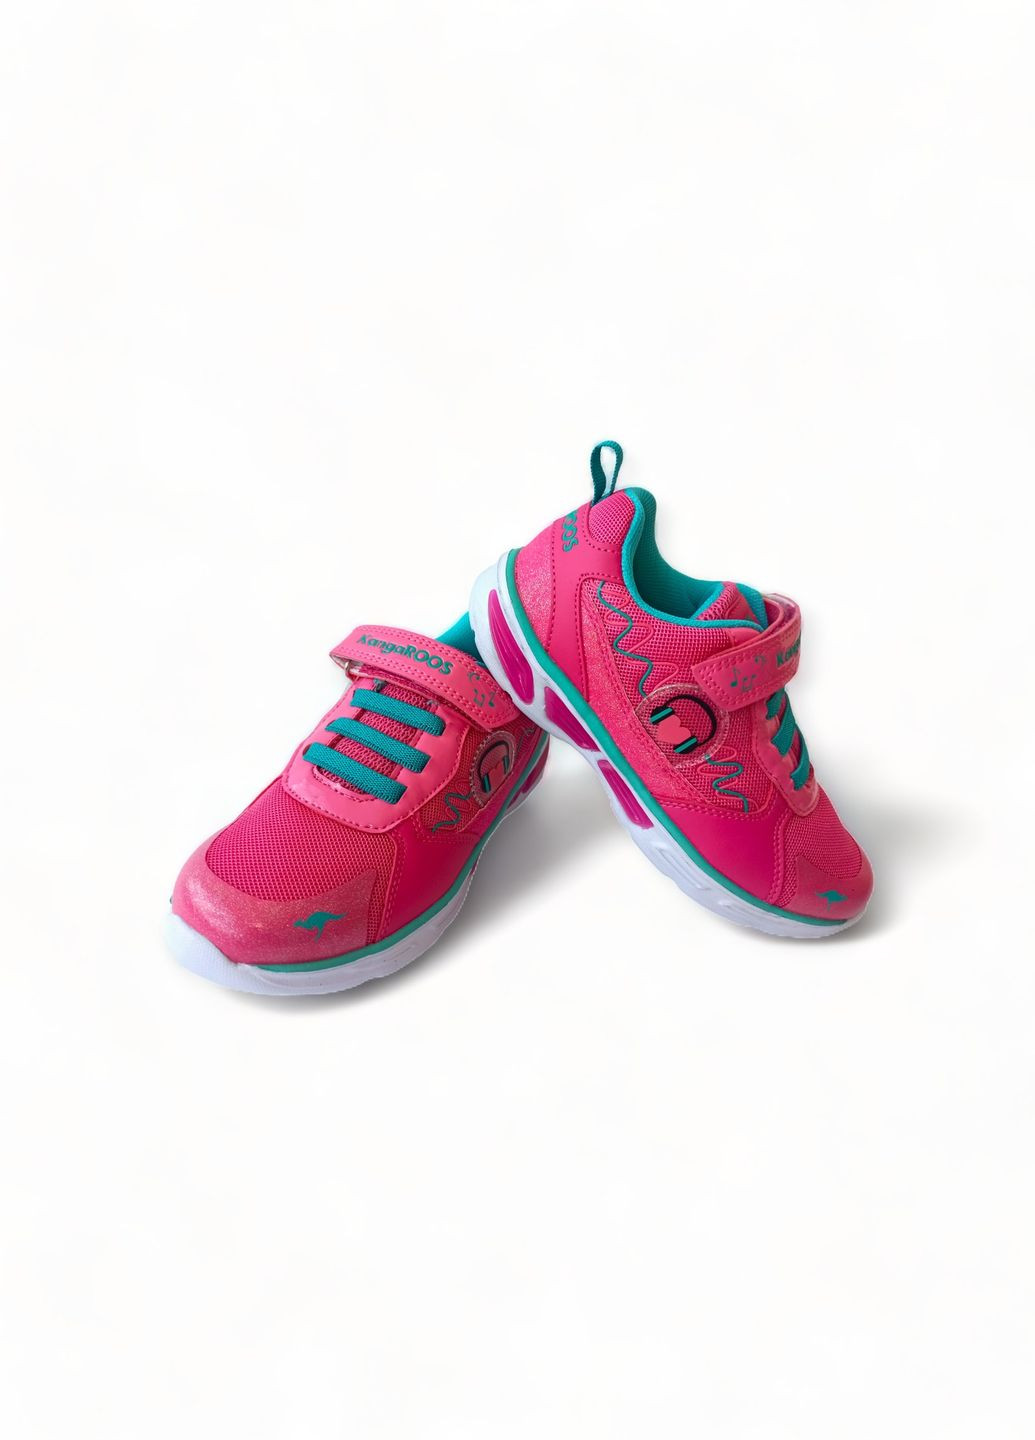 Рожеві всесезонні кросівки дитячі для дівчинки 18497/6056 рожеві з мигалками (32) Kangaroos